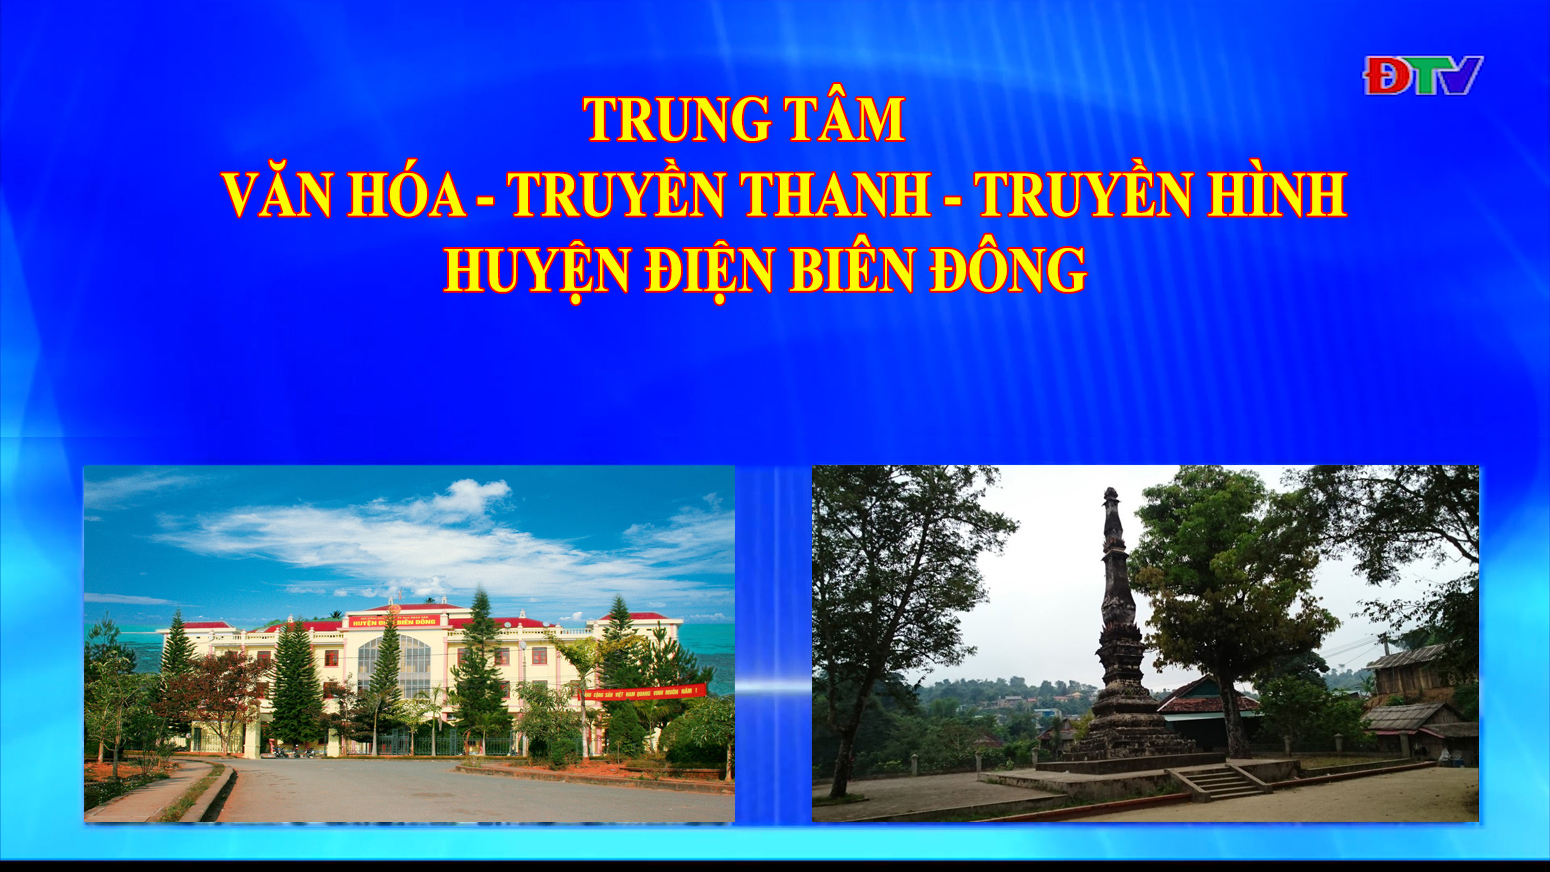 Trung tâm VH-TTTH huyện Điện Biên Đông (Ngày 8-1-2022)